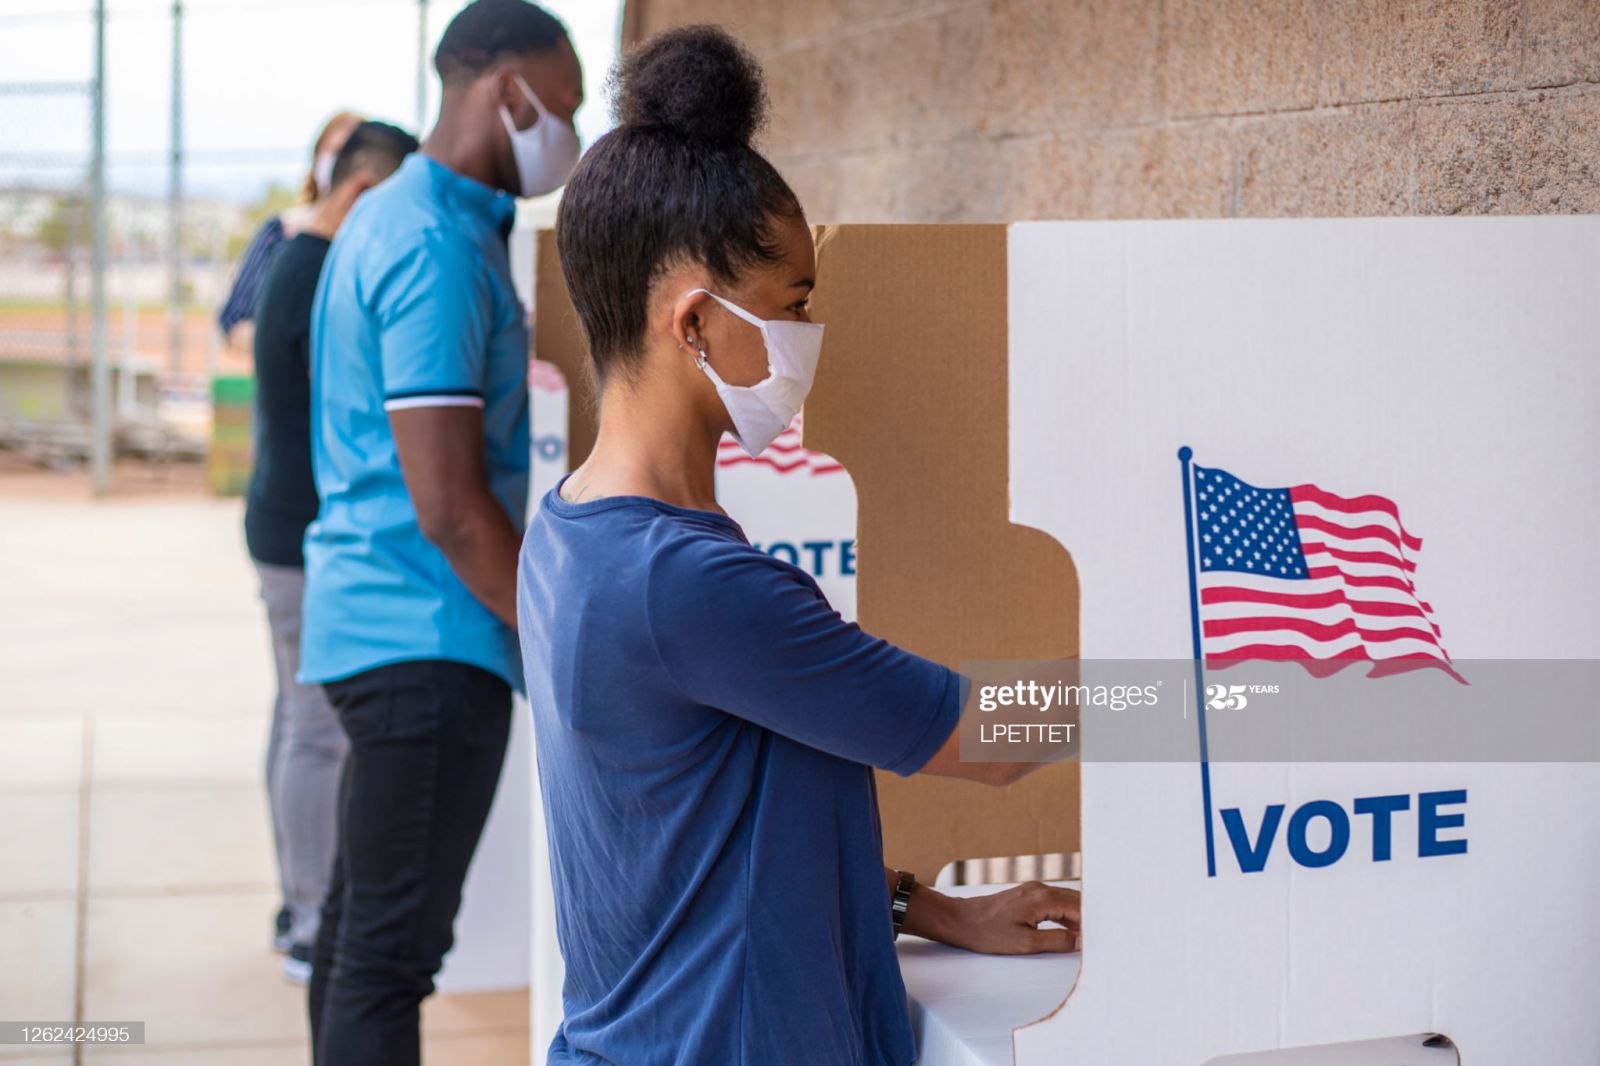 Năm nay gần 100 triệu cử tri bỏ phiếu sớm, con số chưa từng thấy trong lịch sử Mỹ